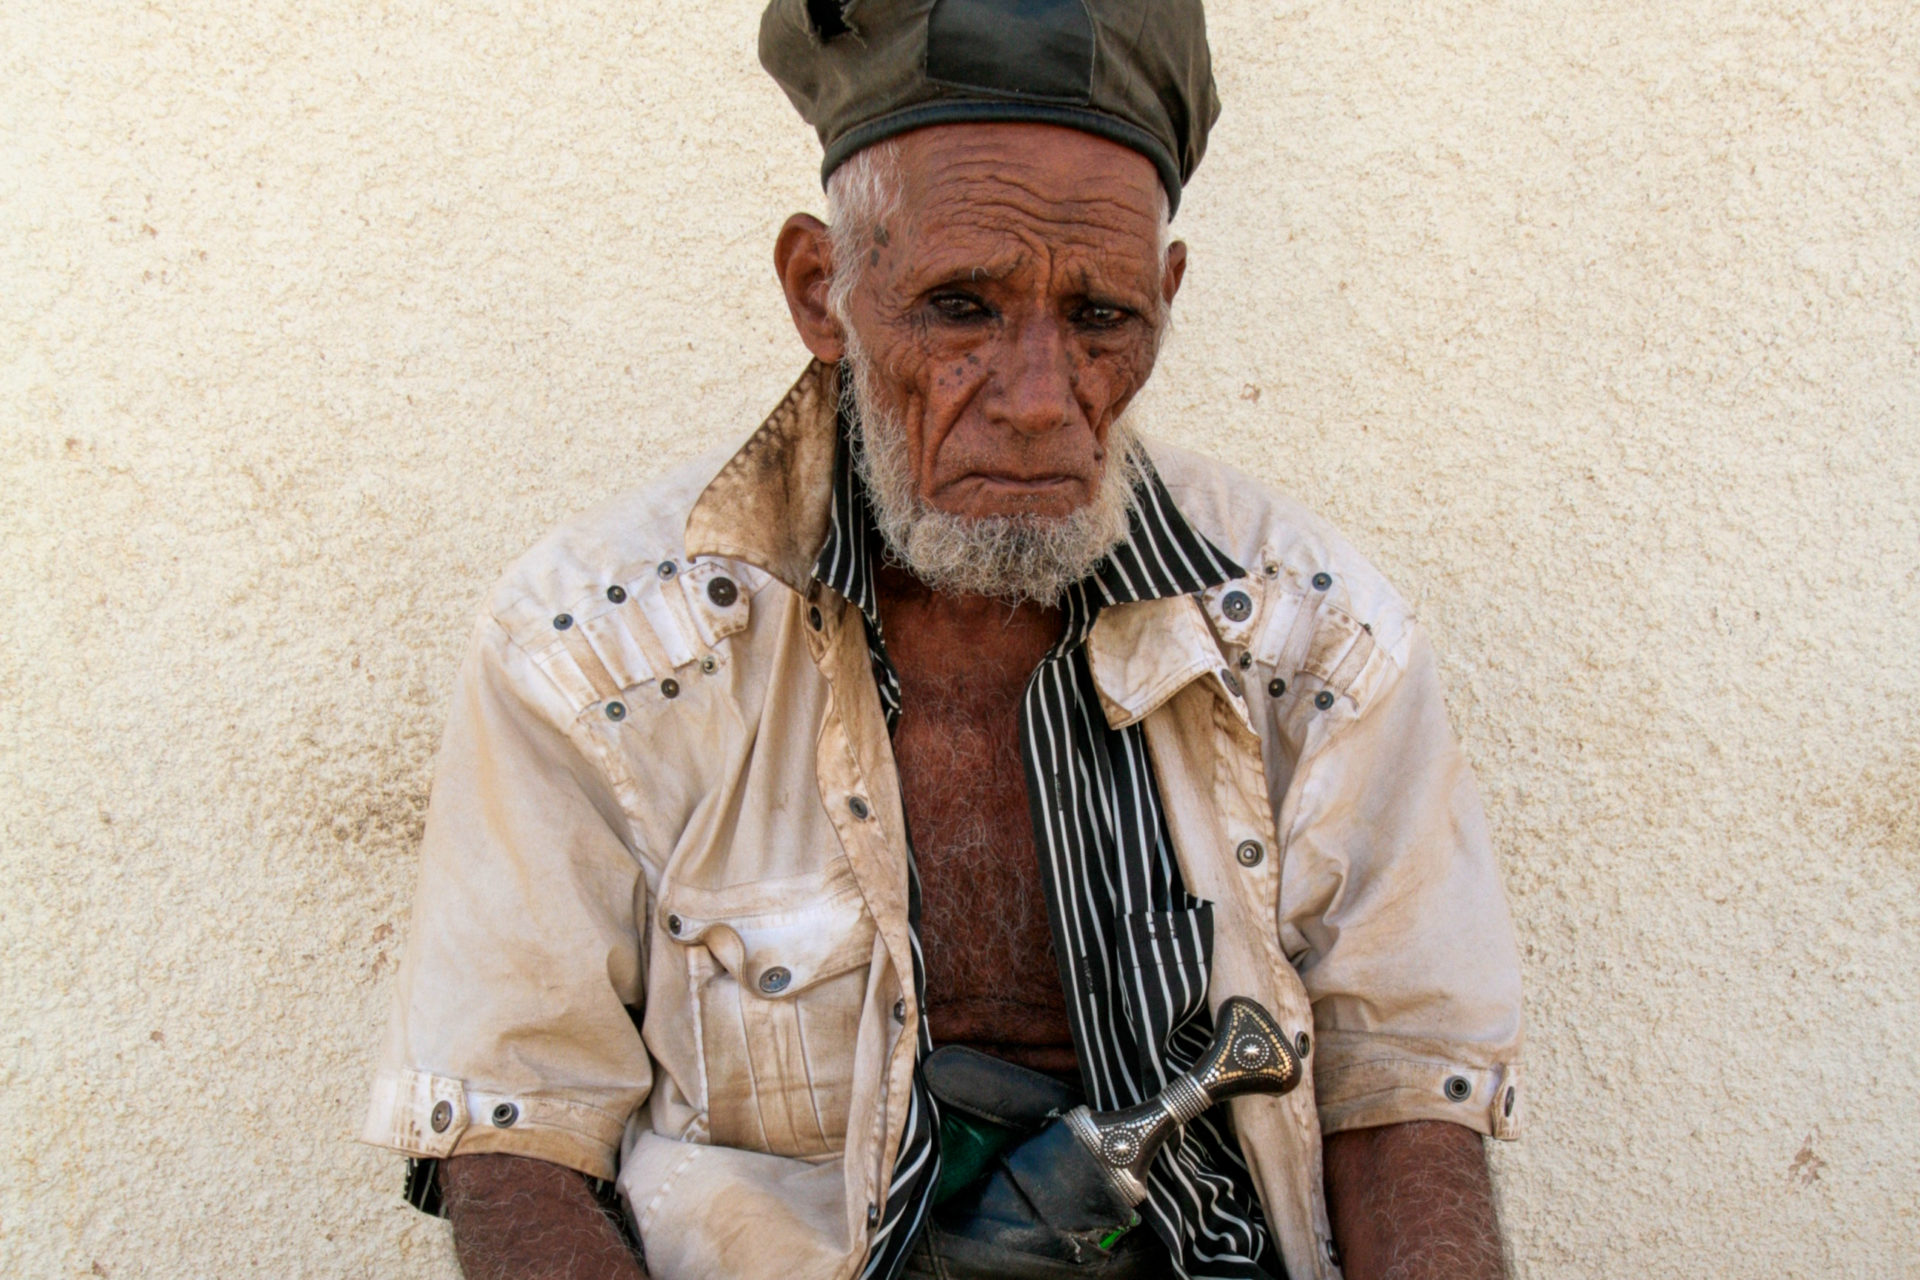 Mann mit Krummdolch in der Wüste Omans, traditioneller Beduine